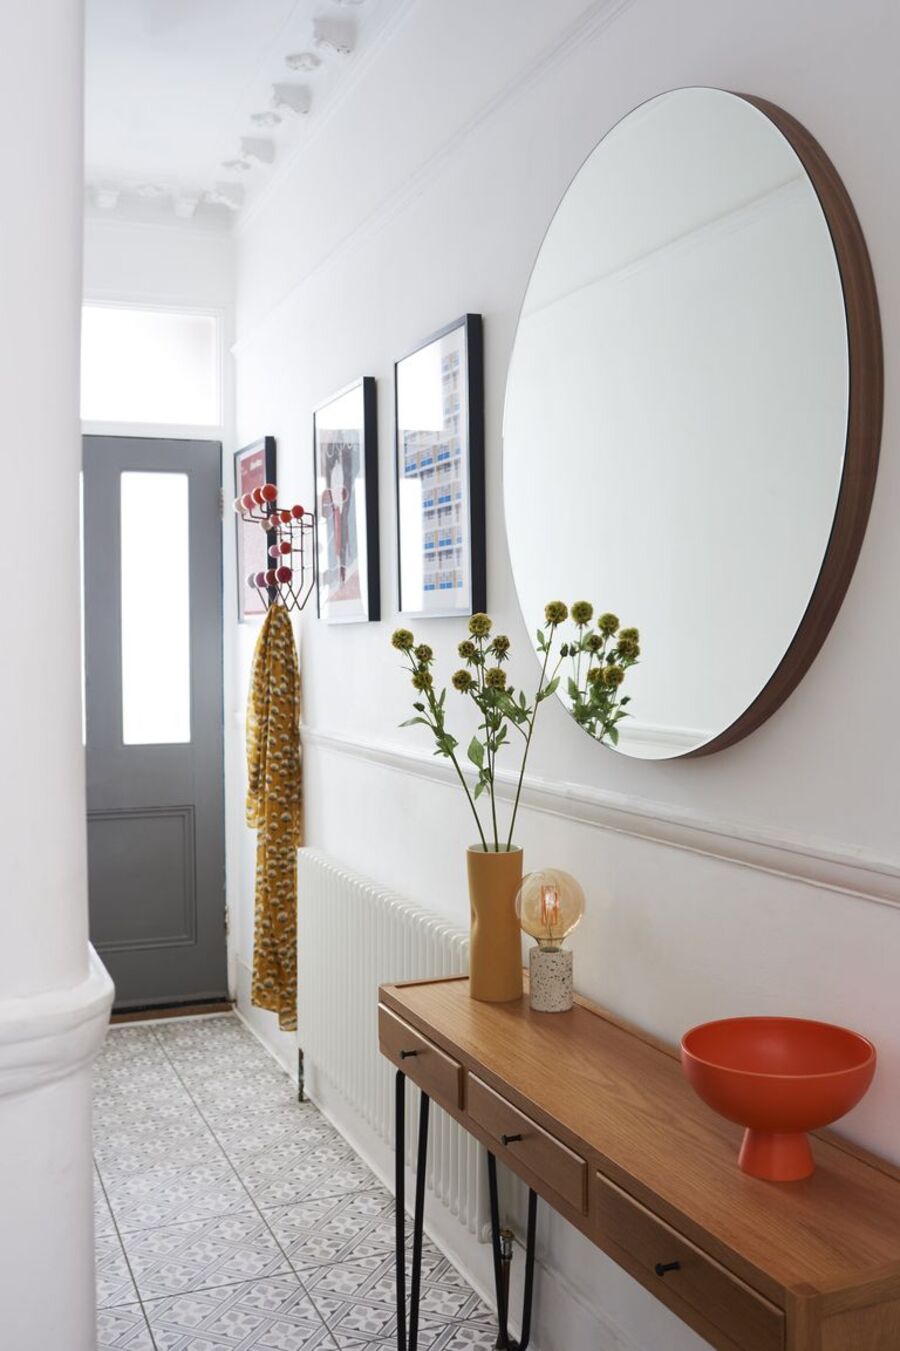 Pasillo de muros blancos decorado con un gran espejo redondo en una de sus paredes, debajo hay un arrimo de madera con patas metálicas negras. Al costado del espejo hay tres cuadros con ilustraciones coloridas y un perchero rojo.